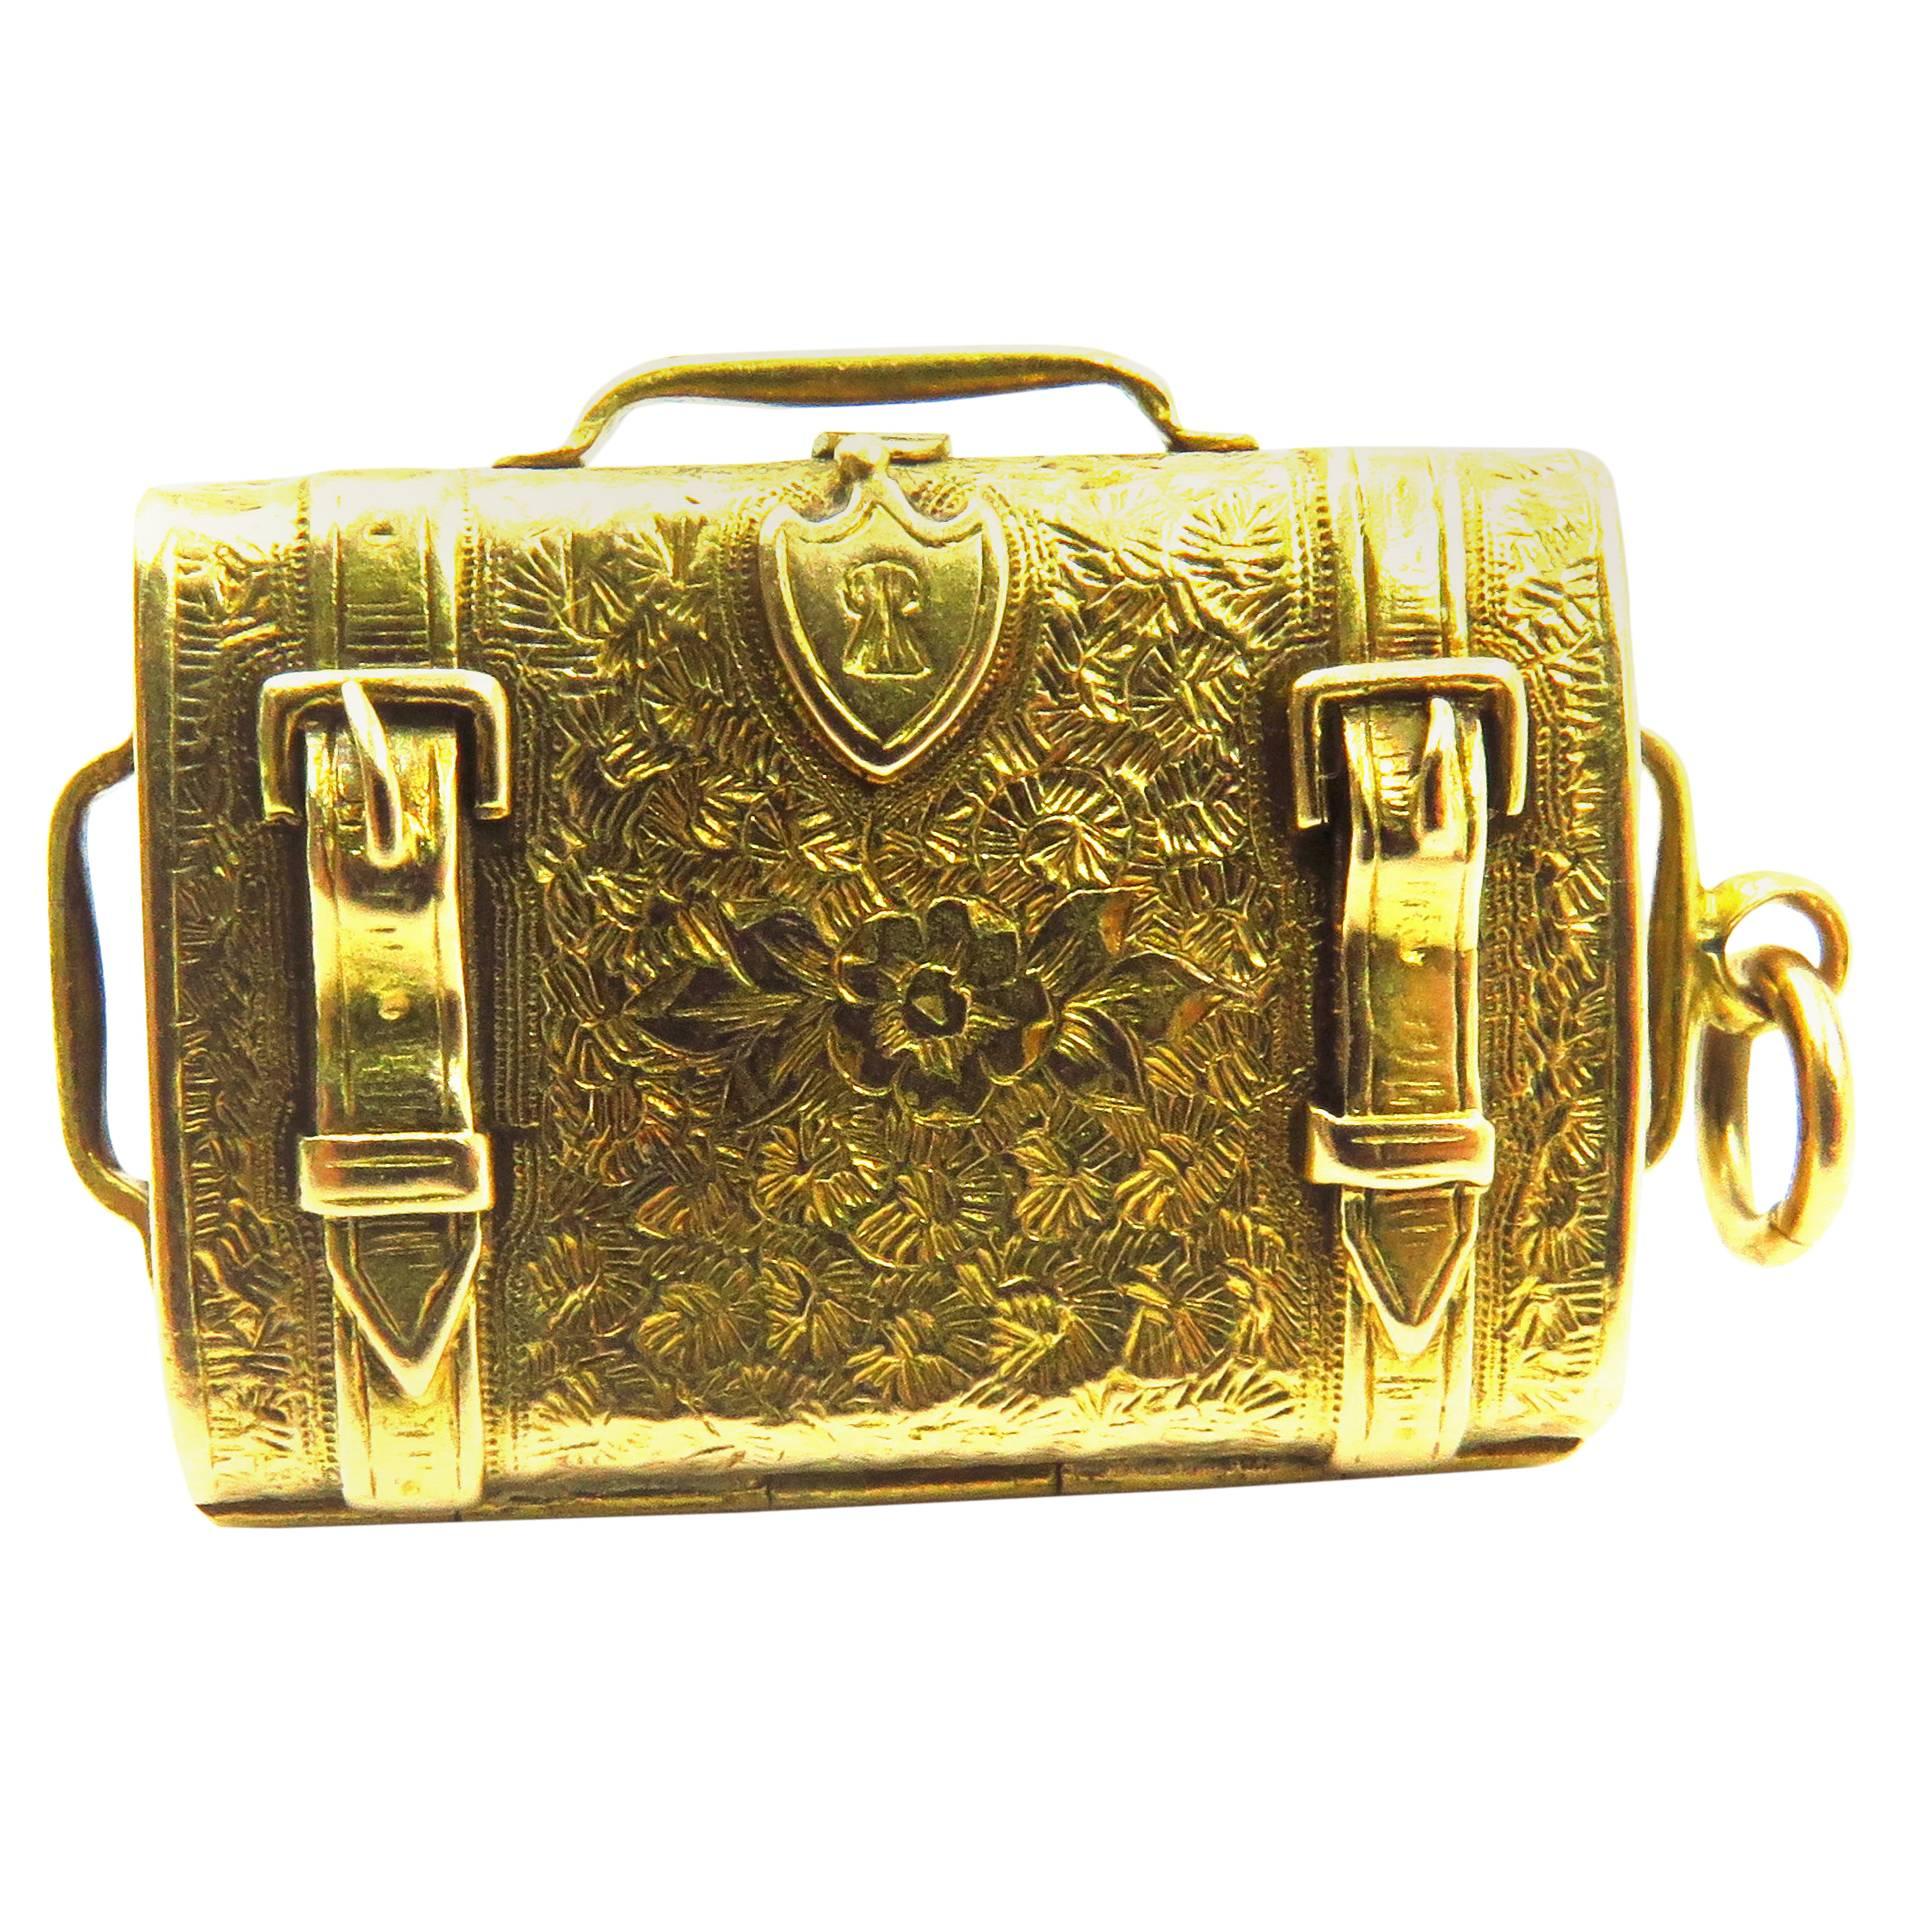 Fabulous Antique Heavily etched Suitcase Motif Gold Locket Charm Pendant